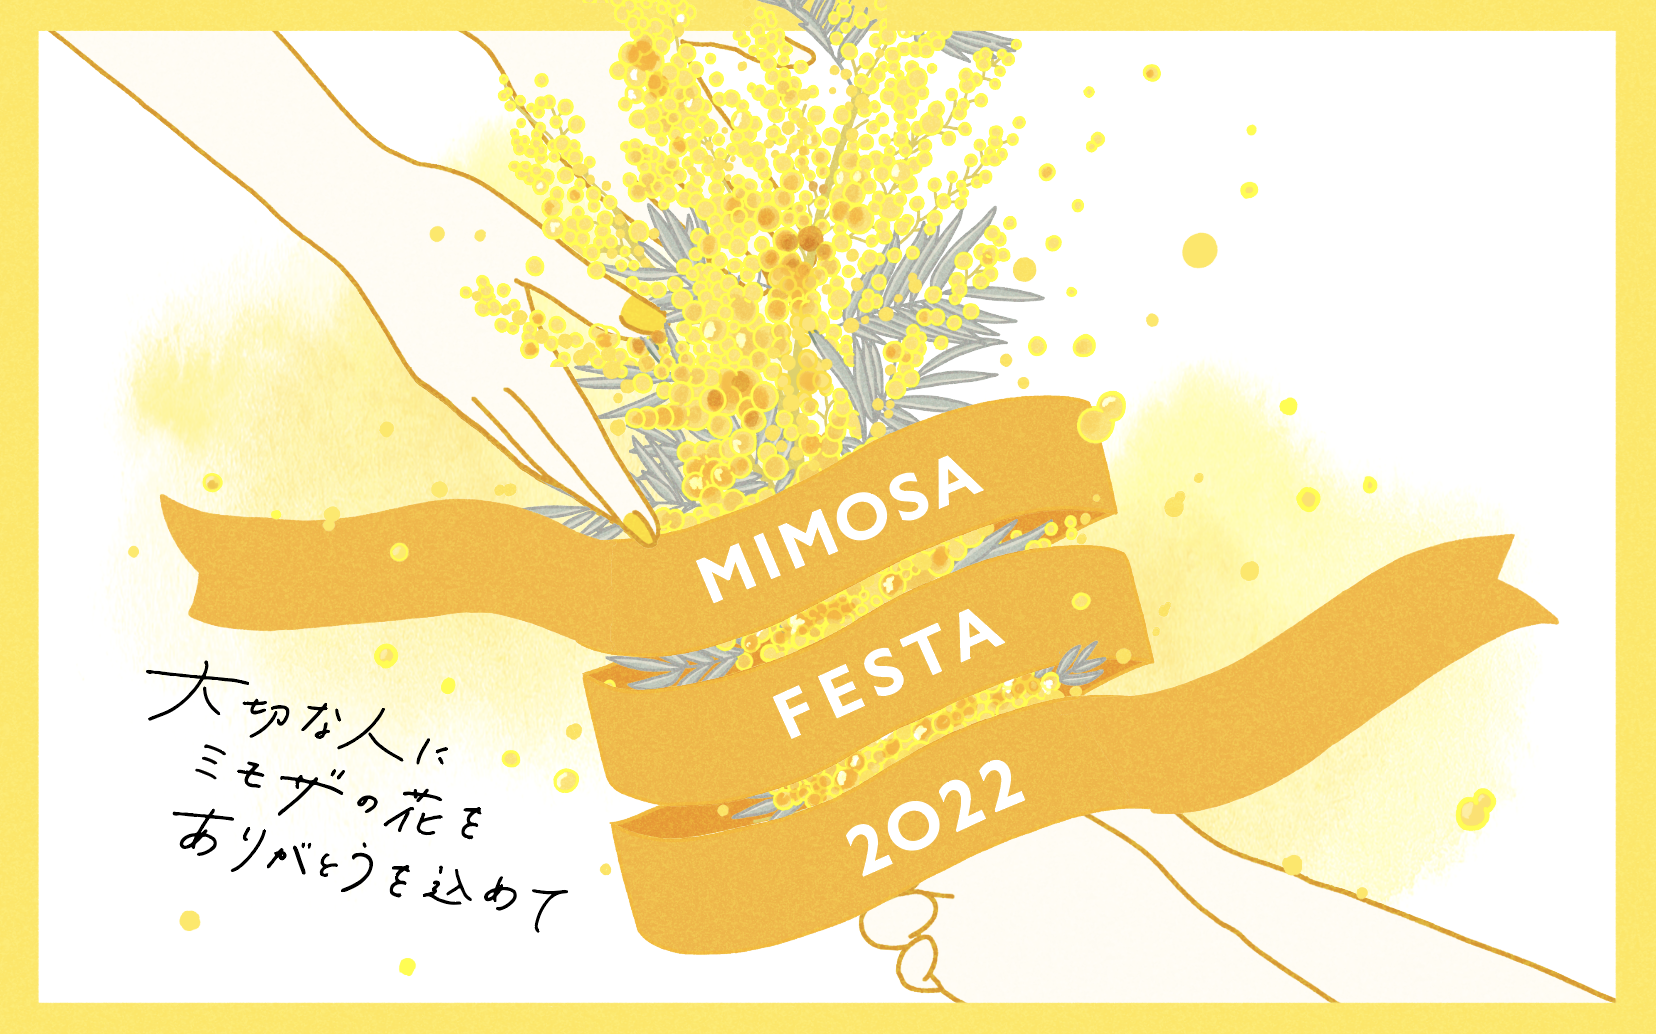 繊研新聞電子版にて『MIMOSA FESTA 2022』が取り上げられました。